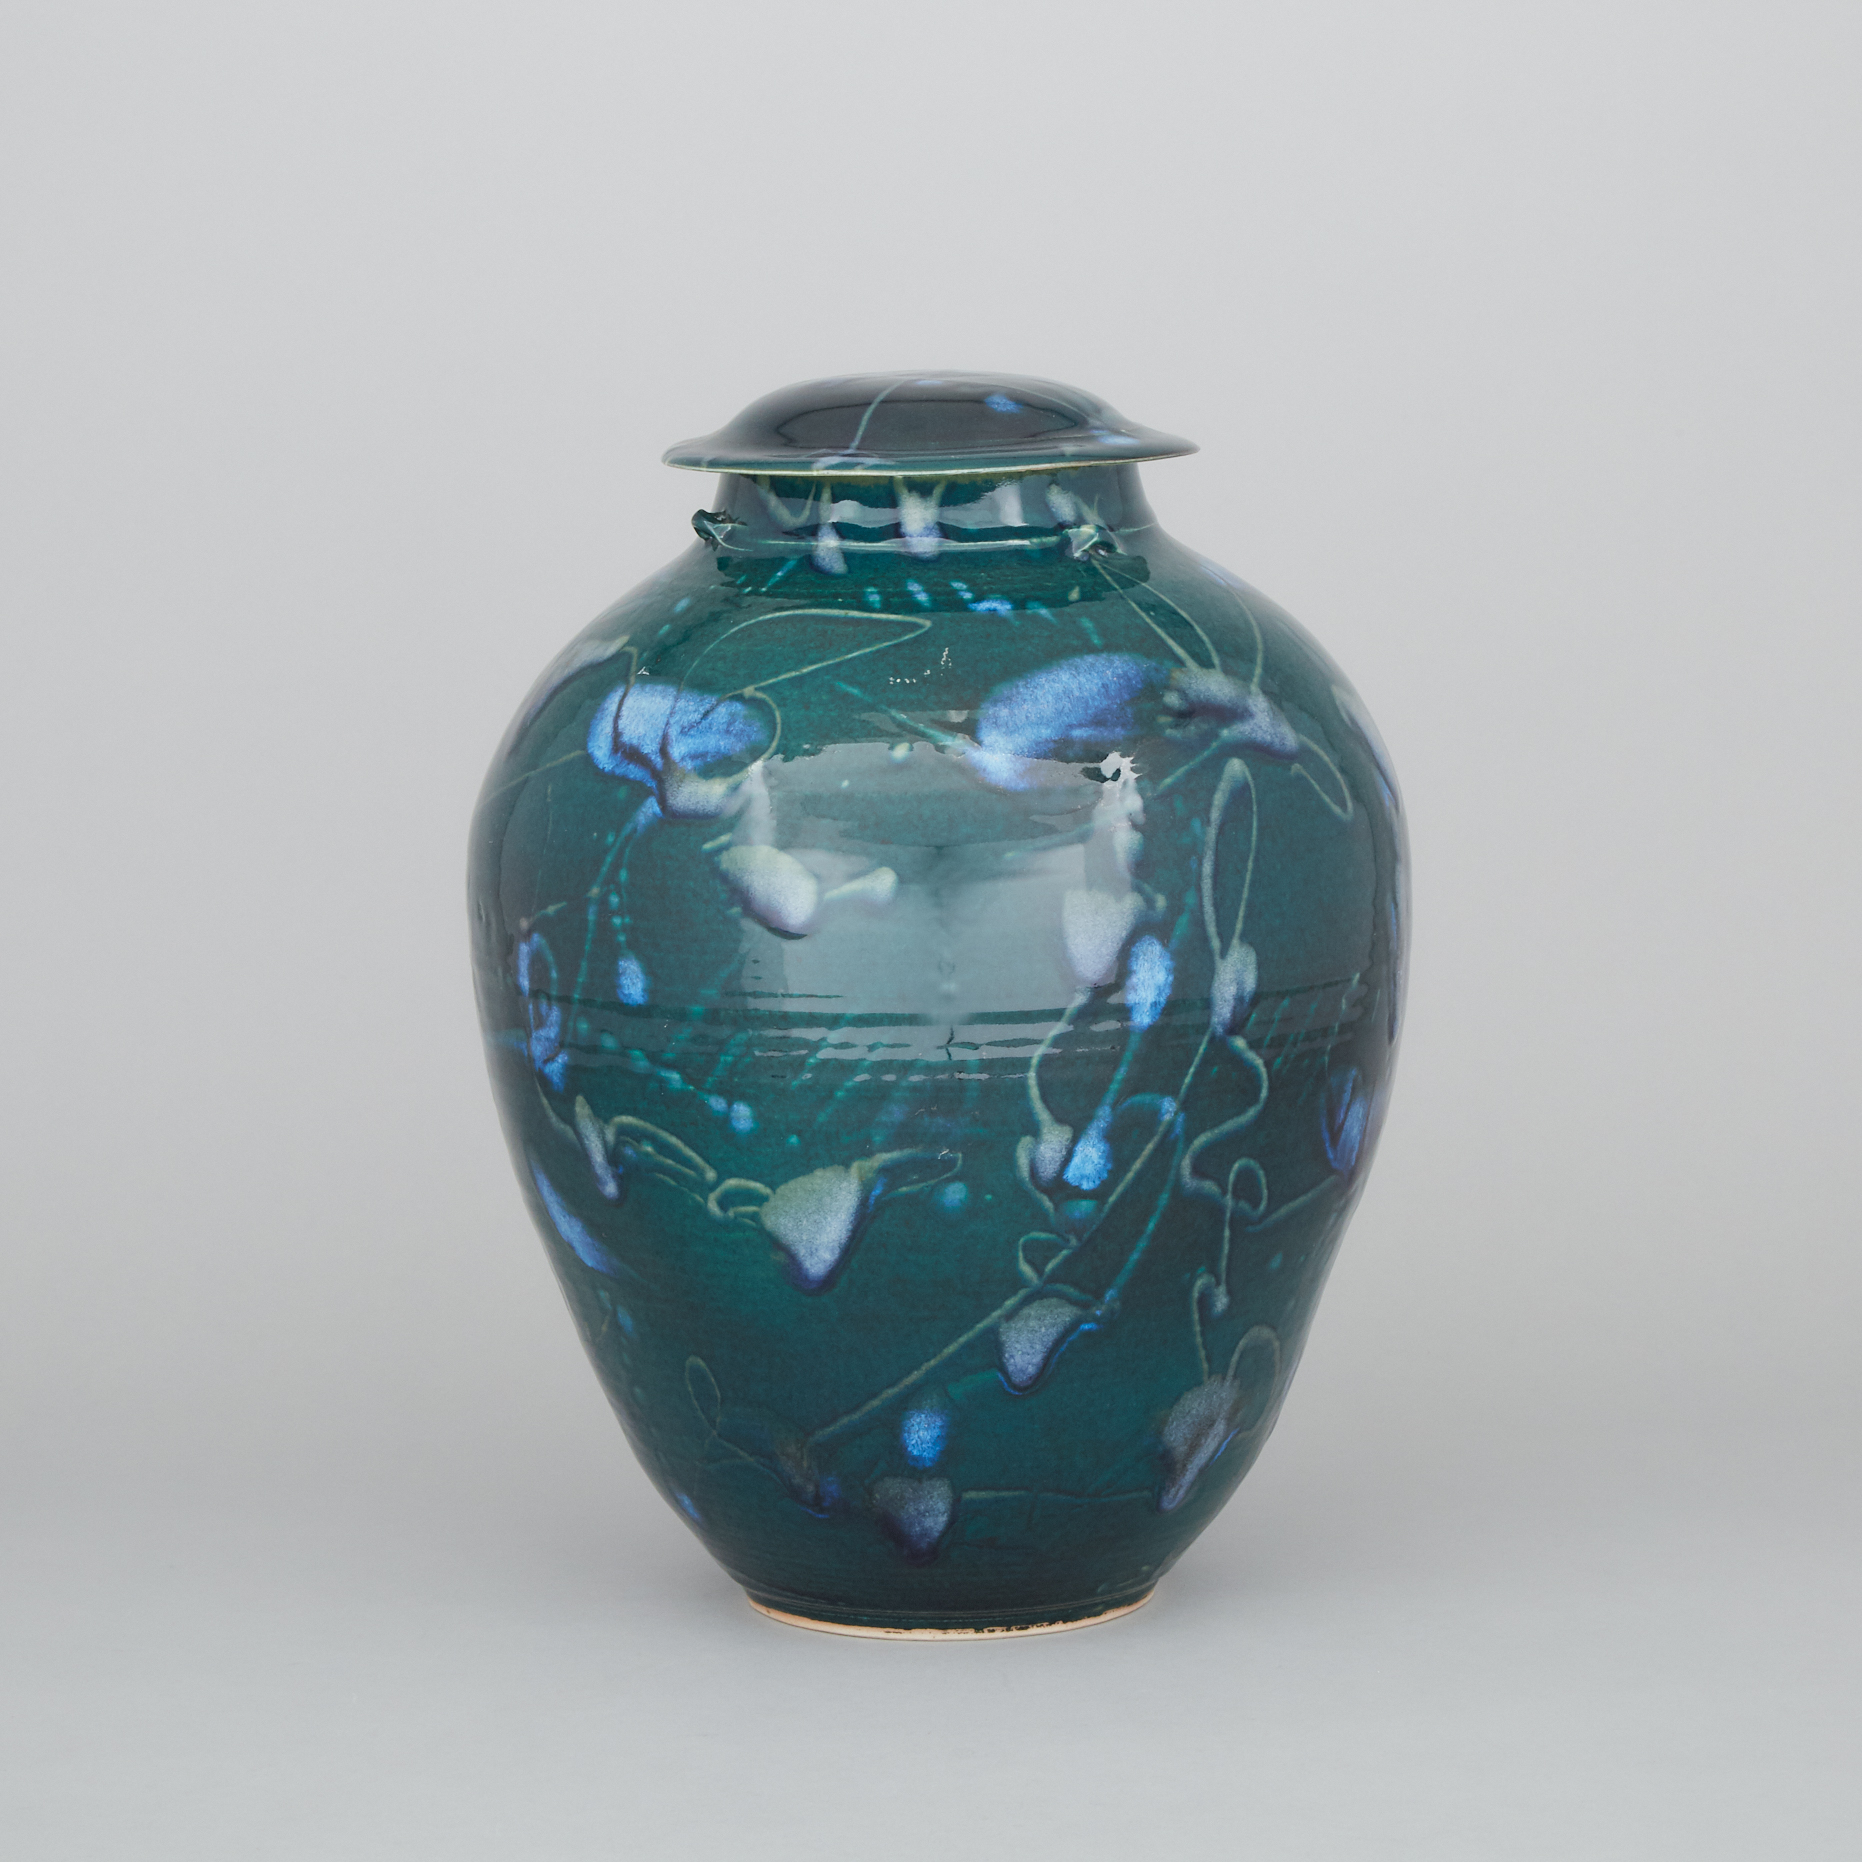 Kayo O'Young (Canadian, b.1950), Large Green Glazed Ginger Jar, c.1995